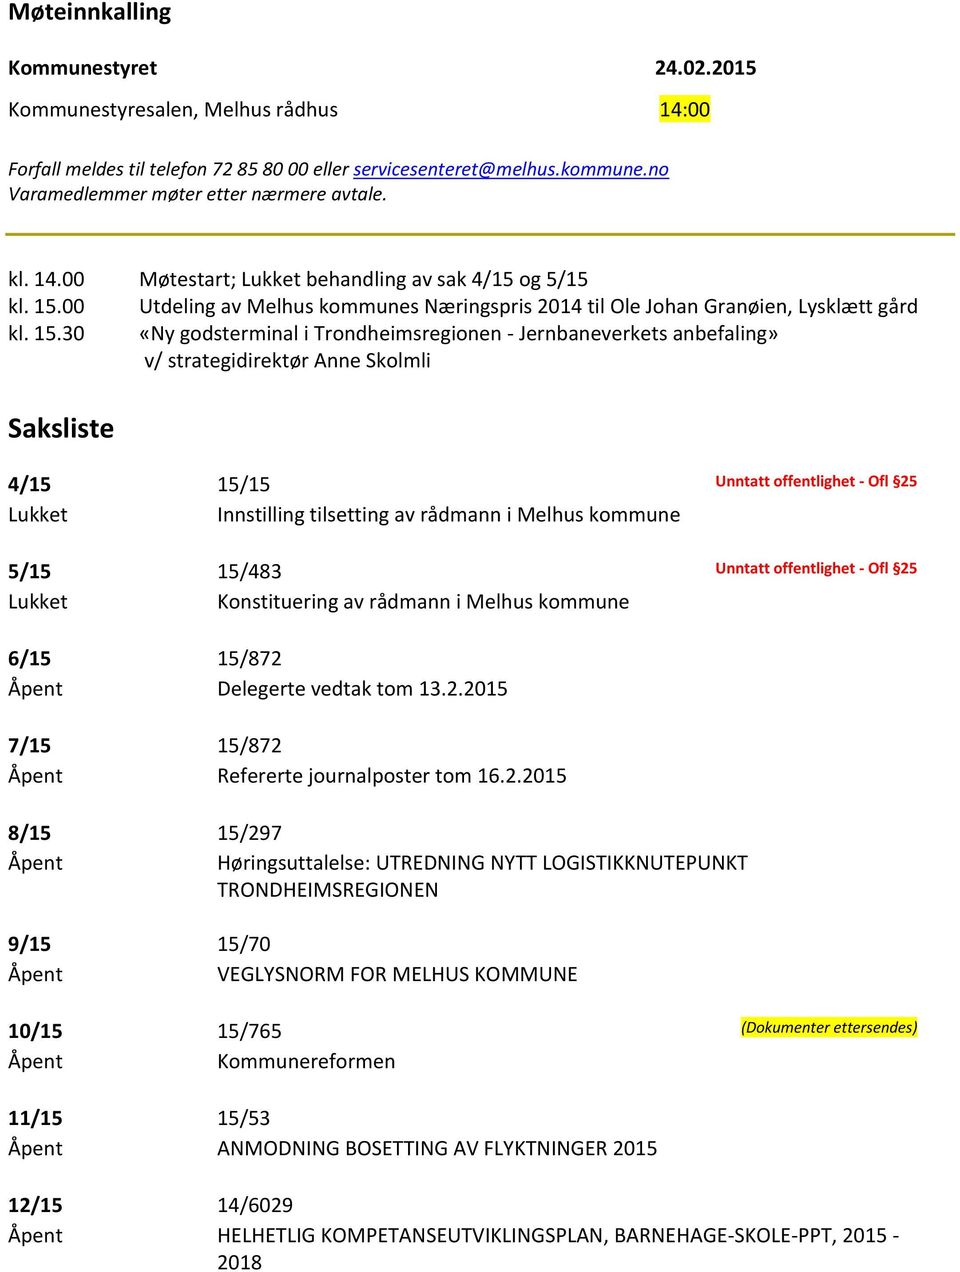 00 Utdeling av Melhus kommunes Næringspris 2014 til Ole Johan Granøien, Lysklætt gård kl. 15.